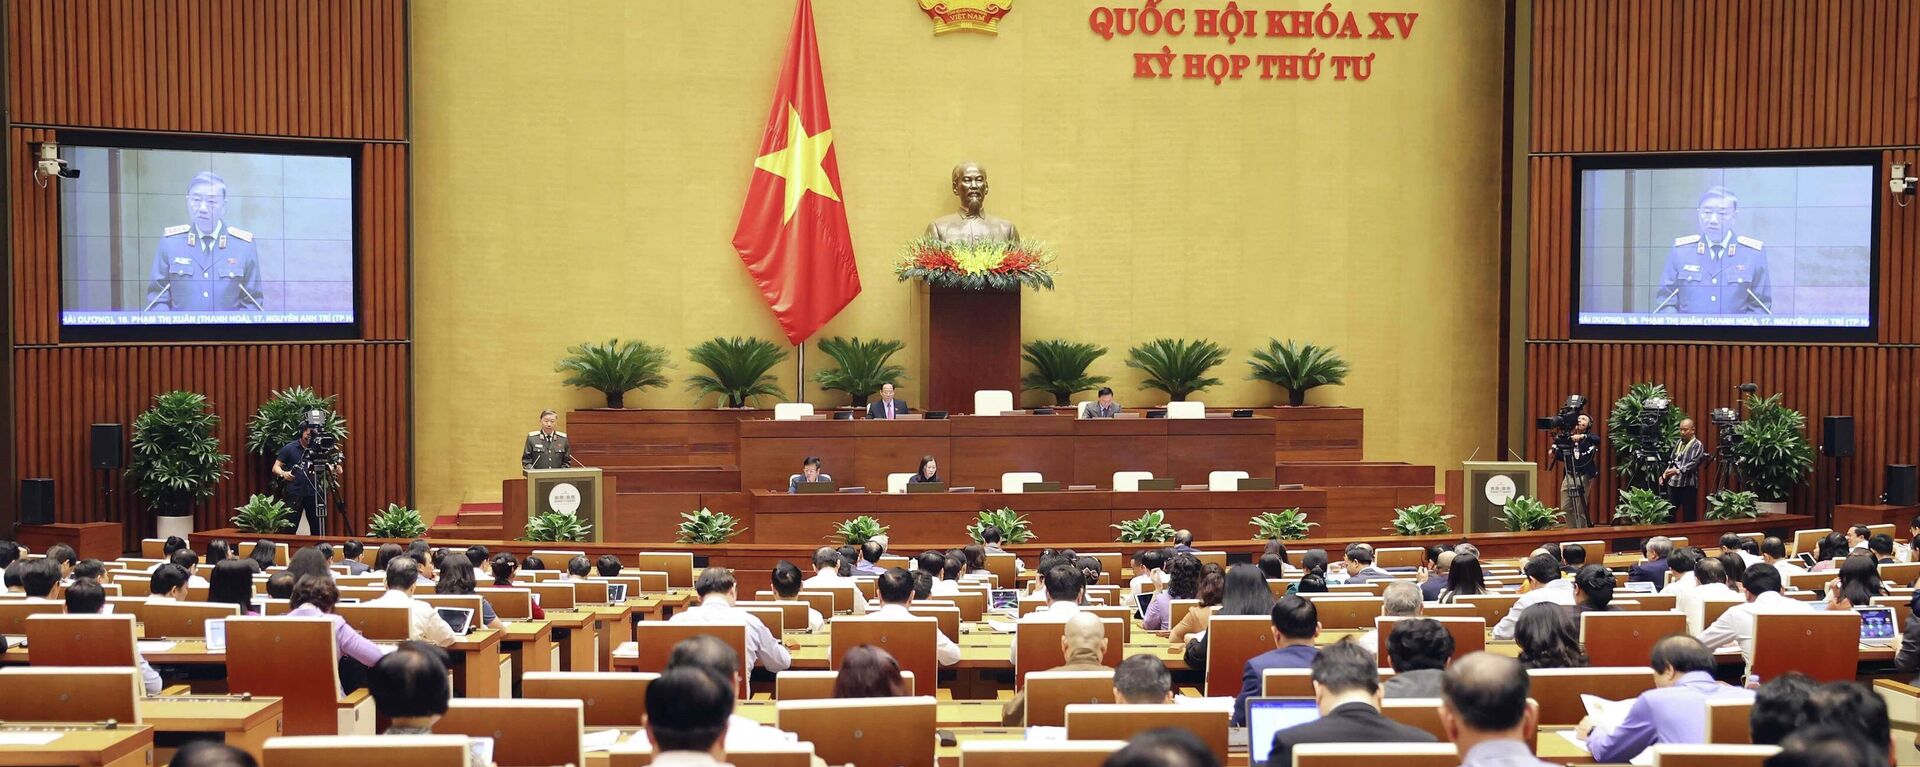 Quốc hội thảo luận về công tác phòng, chống tội phạm và thi hành án năm 2022 - Sputnik Việt Nam, 1920, 05.01.2023